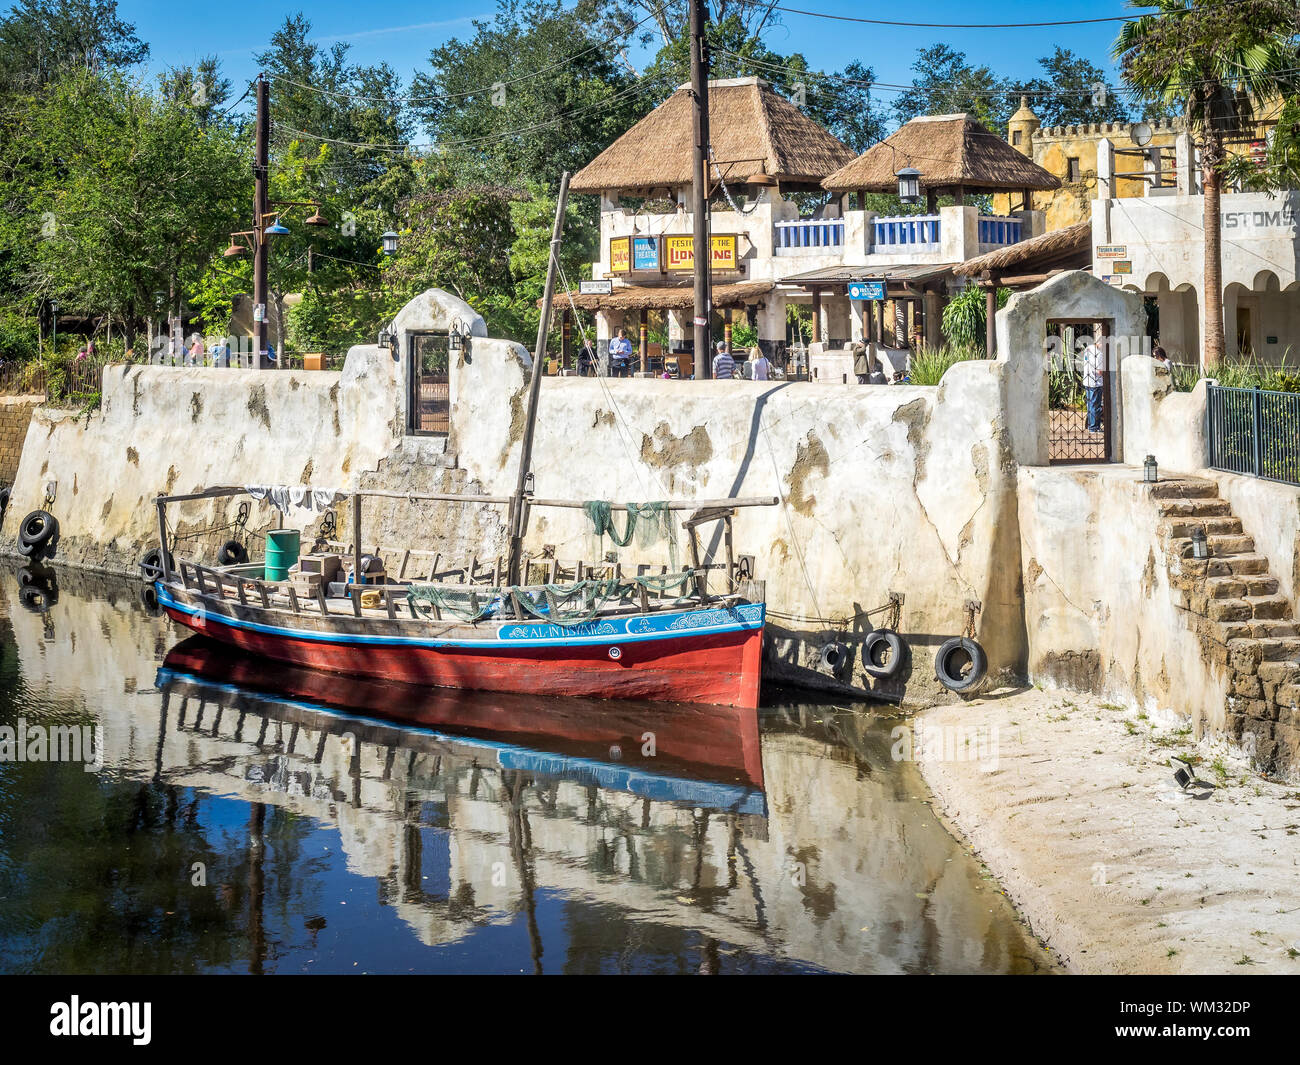 Las multitudes disfrutar del Parque Temático Animal Kingdom de Disney World en Orlando, Florida. Los edificios son visibles en la sección africana del parque. Foto de stock